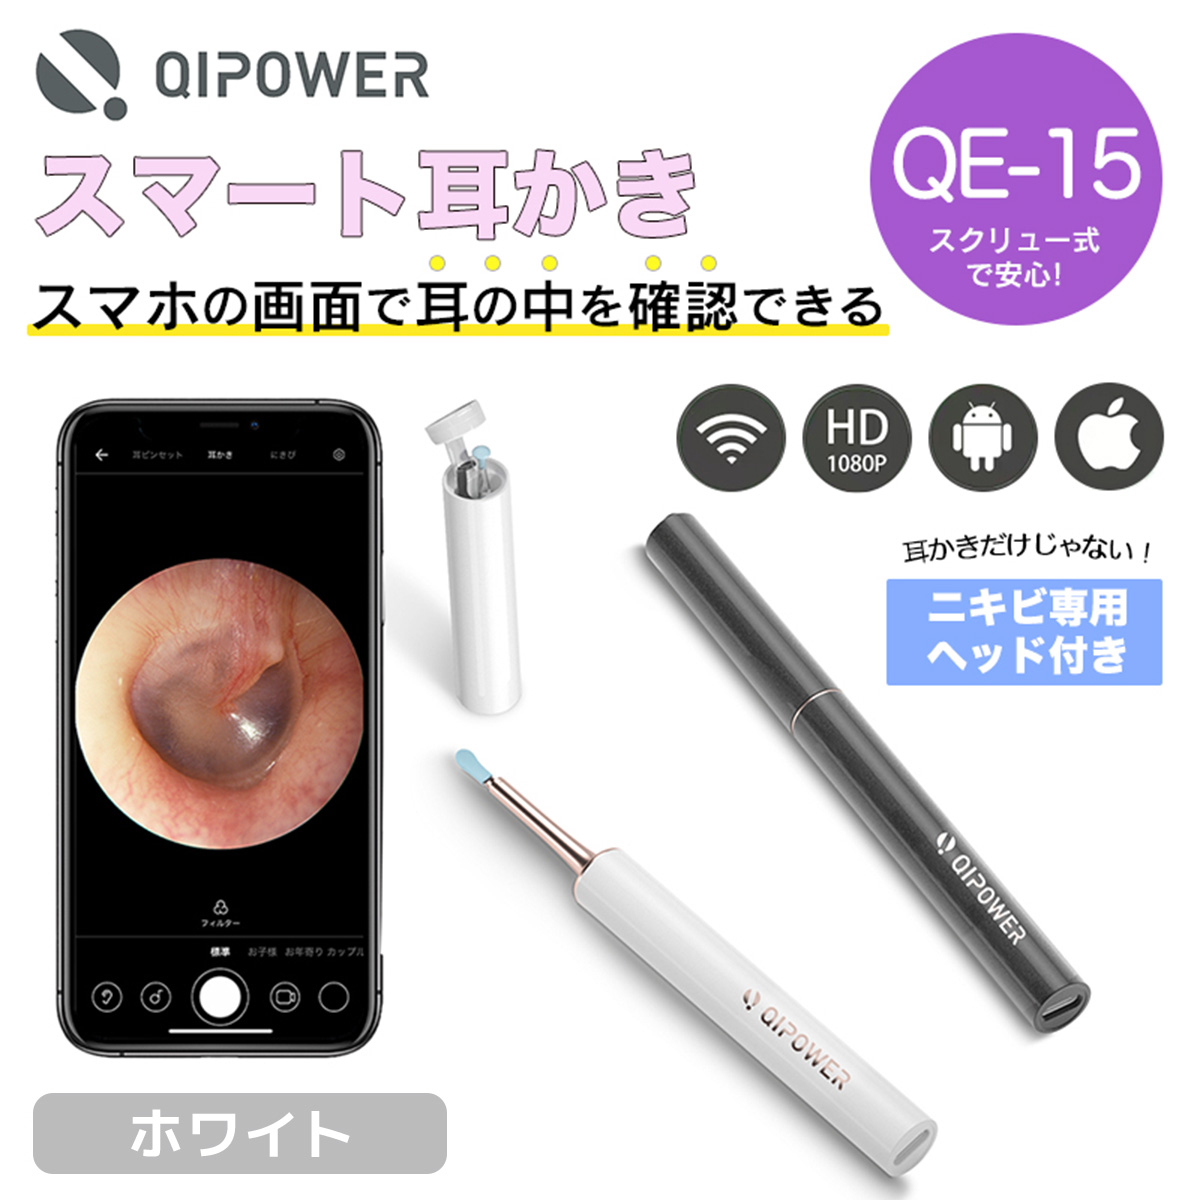 【在庫品/即納】QiPower スマート耳かき QE-15 ホワイト